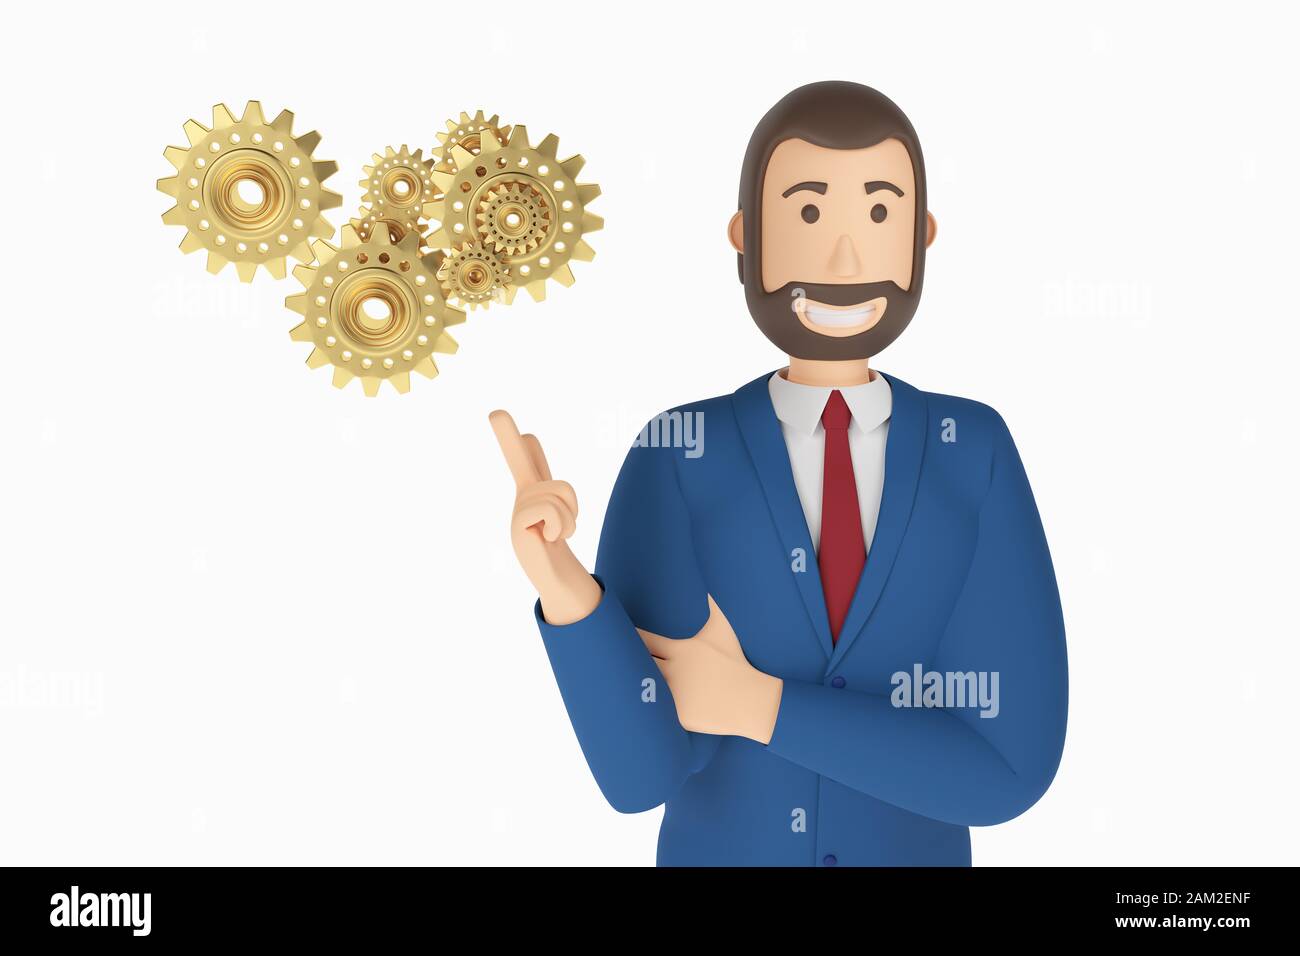 Cartoon-Charakter, Geschäftsmann im Anzug mit dem Zeigefinger auf eine Zahnräder. Symbol für Business-Concept Gears. 3D-Rendering Stockfoto